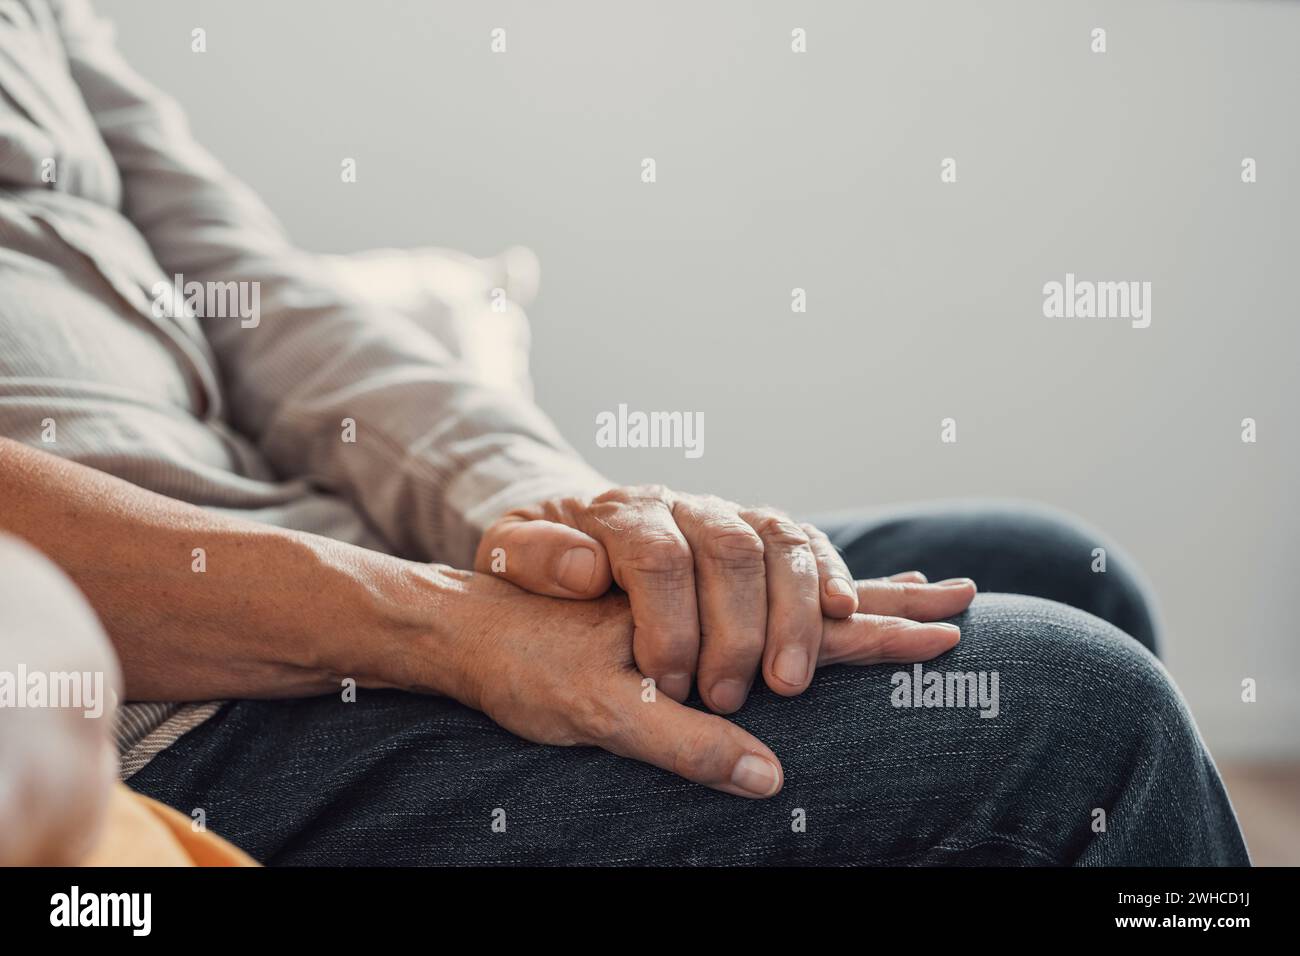 Primo piano donna affettuosa anziana che copre le mani rugose di marito maturo, mostrando amore e sostegno a casa. Una coppia di famiglia di mezza età che si prende cura di una conversazione sincera, fiduciosa e onesta. Foto Stock